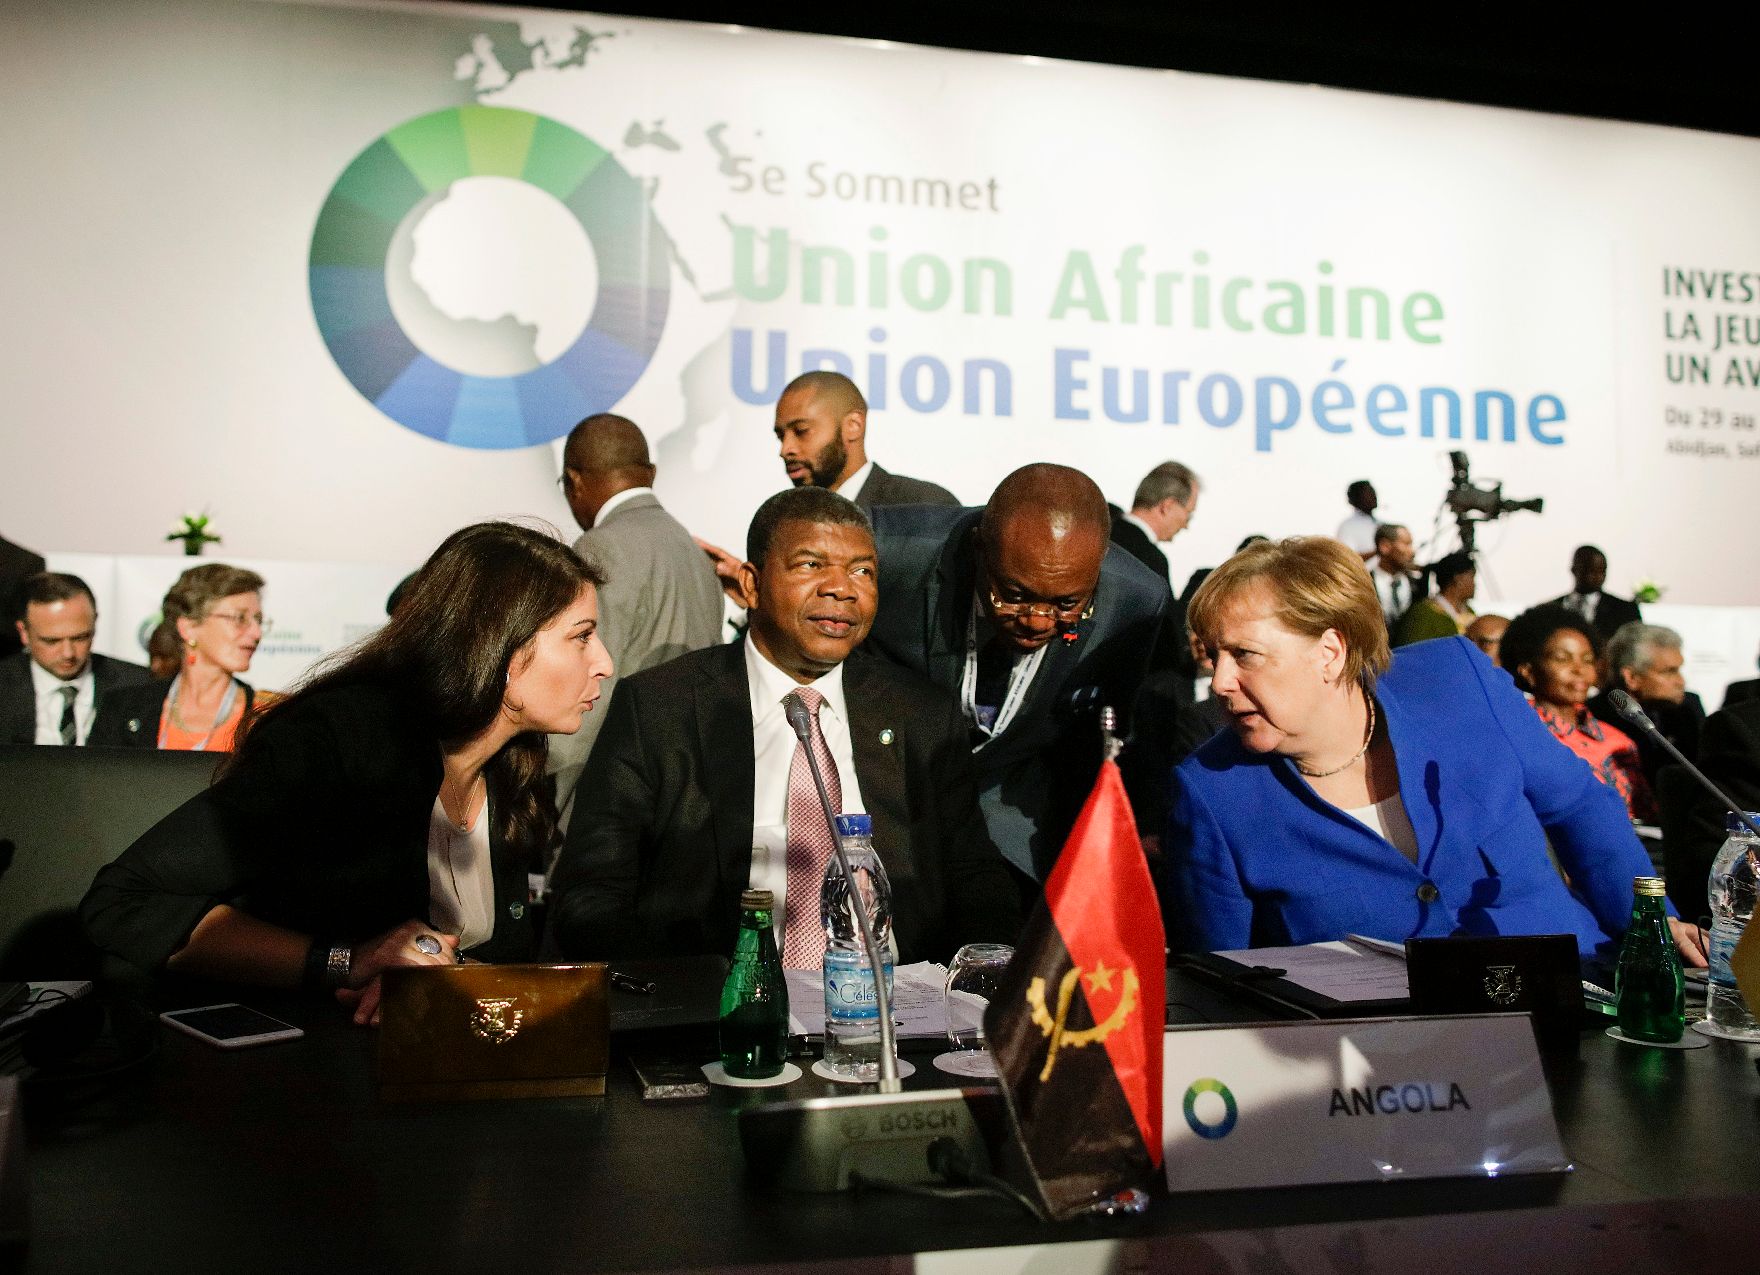 Am 29. November 2017 nahm Staatssekretärin Muna Duzdar (l.) am EU-Afrika Gipfel teil. Im Bild mit der deutschen Bundeskanzlerin Angela Merkel (r.) und dem Präsidenten von Angola João Lourenço (m.).